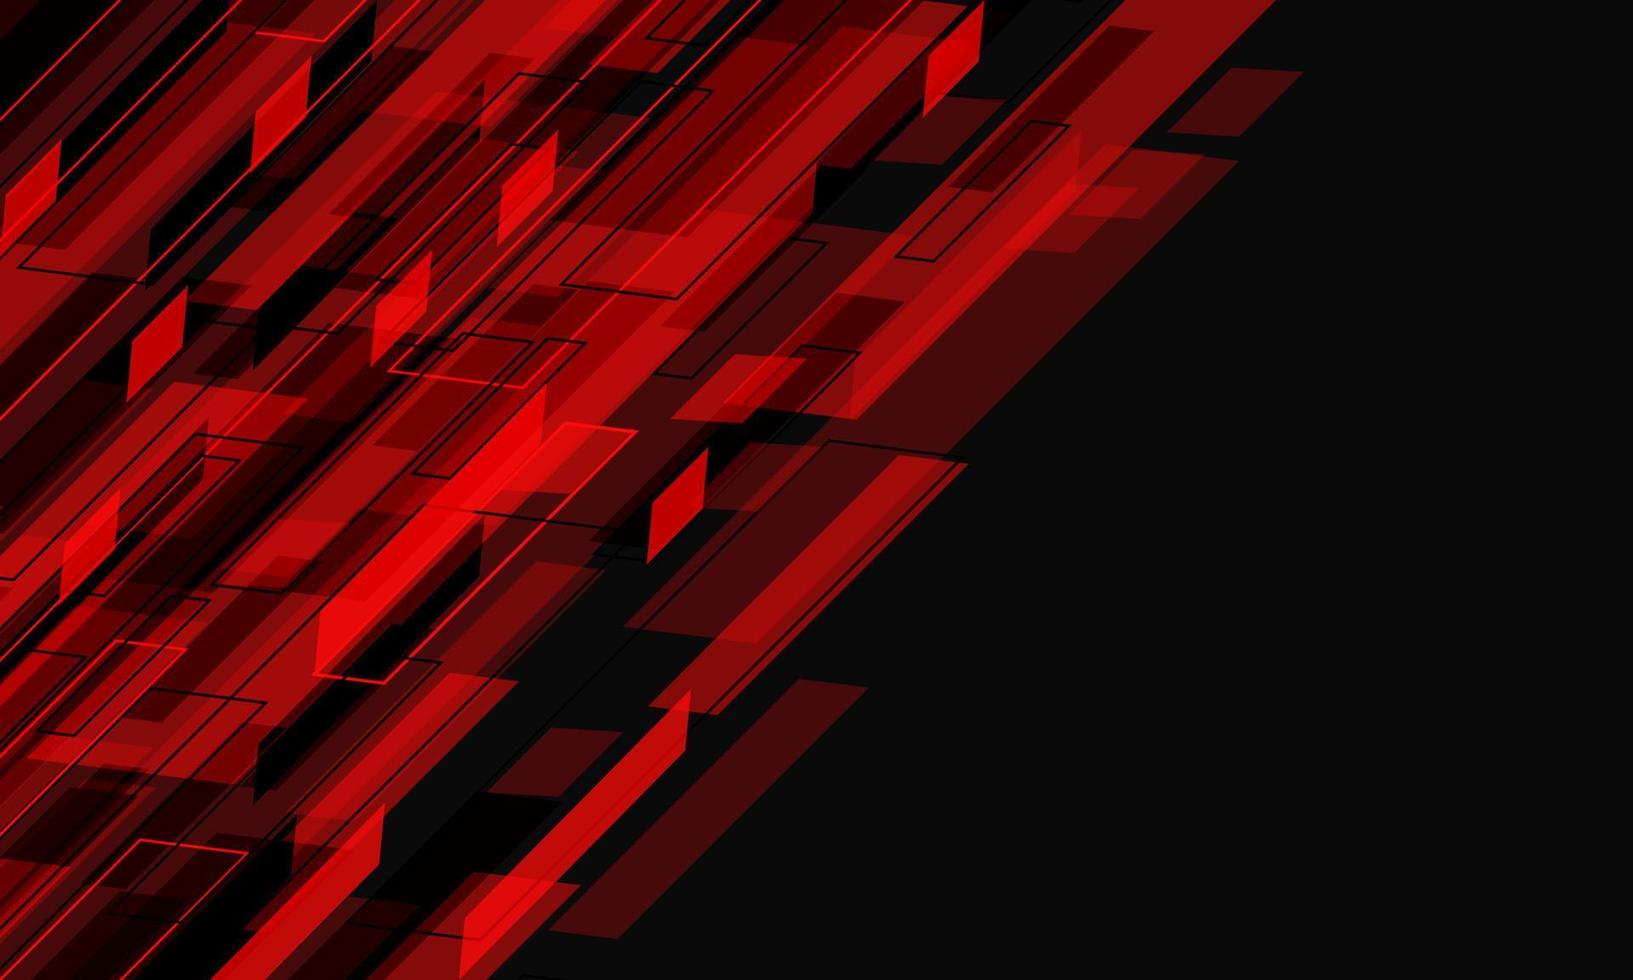 fluxo geométrico cibernético de dados vermelho abstrato dinâmico em cinza com design de espaço em branco moderno vetor de fundo de tecnologia futurista